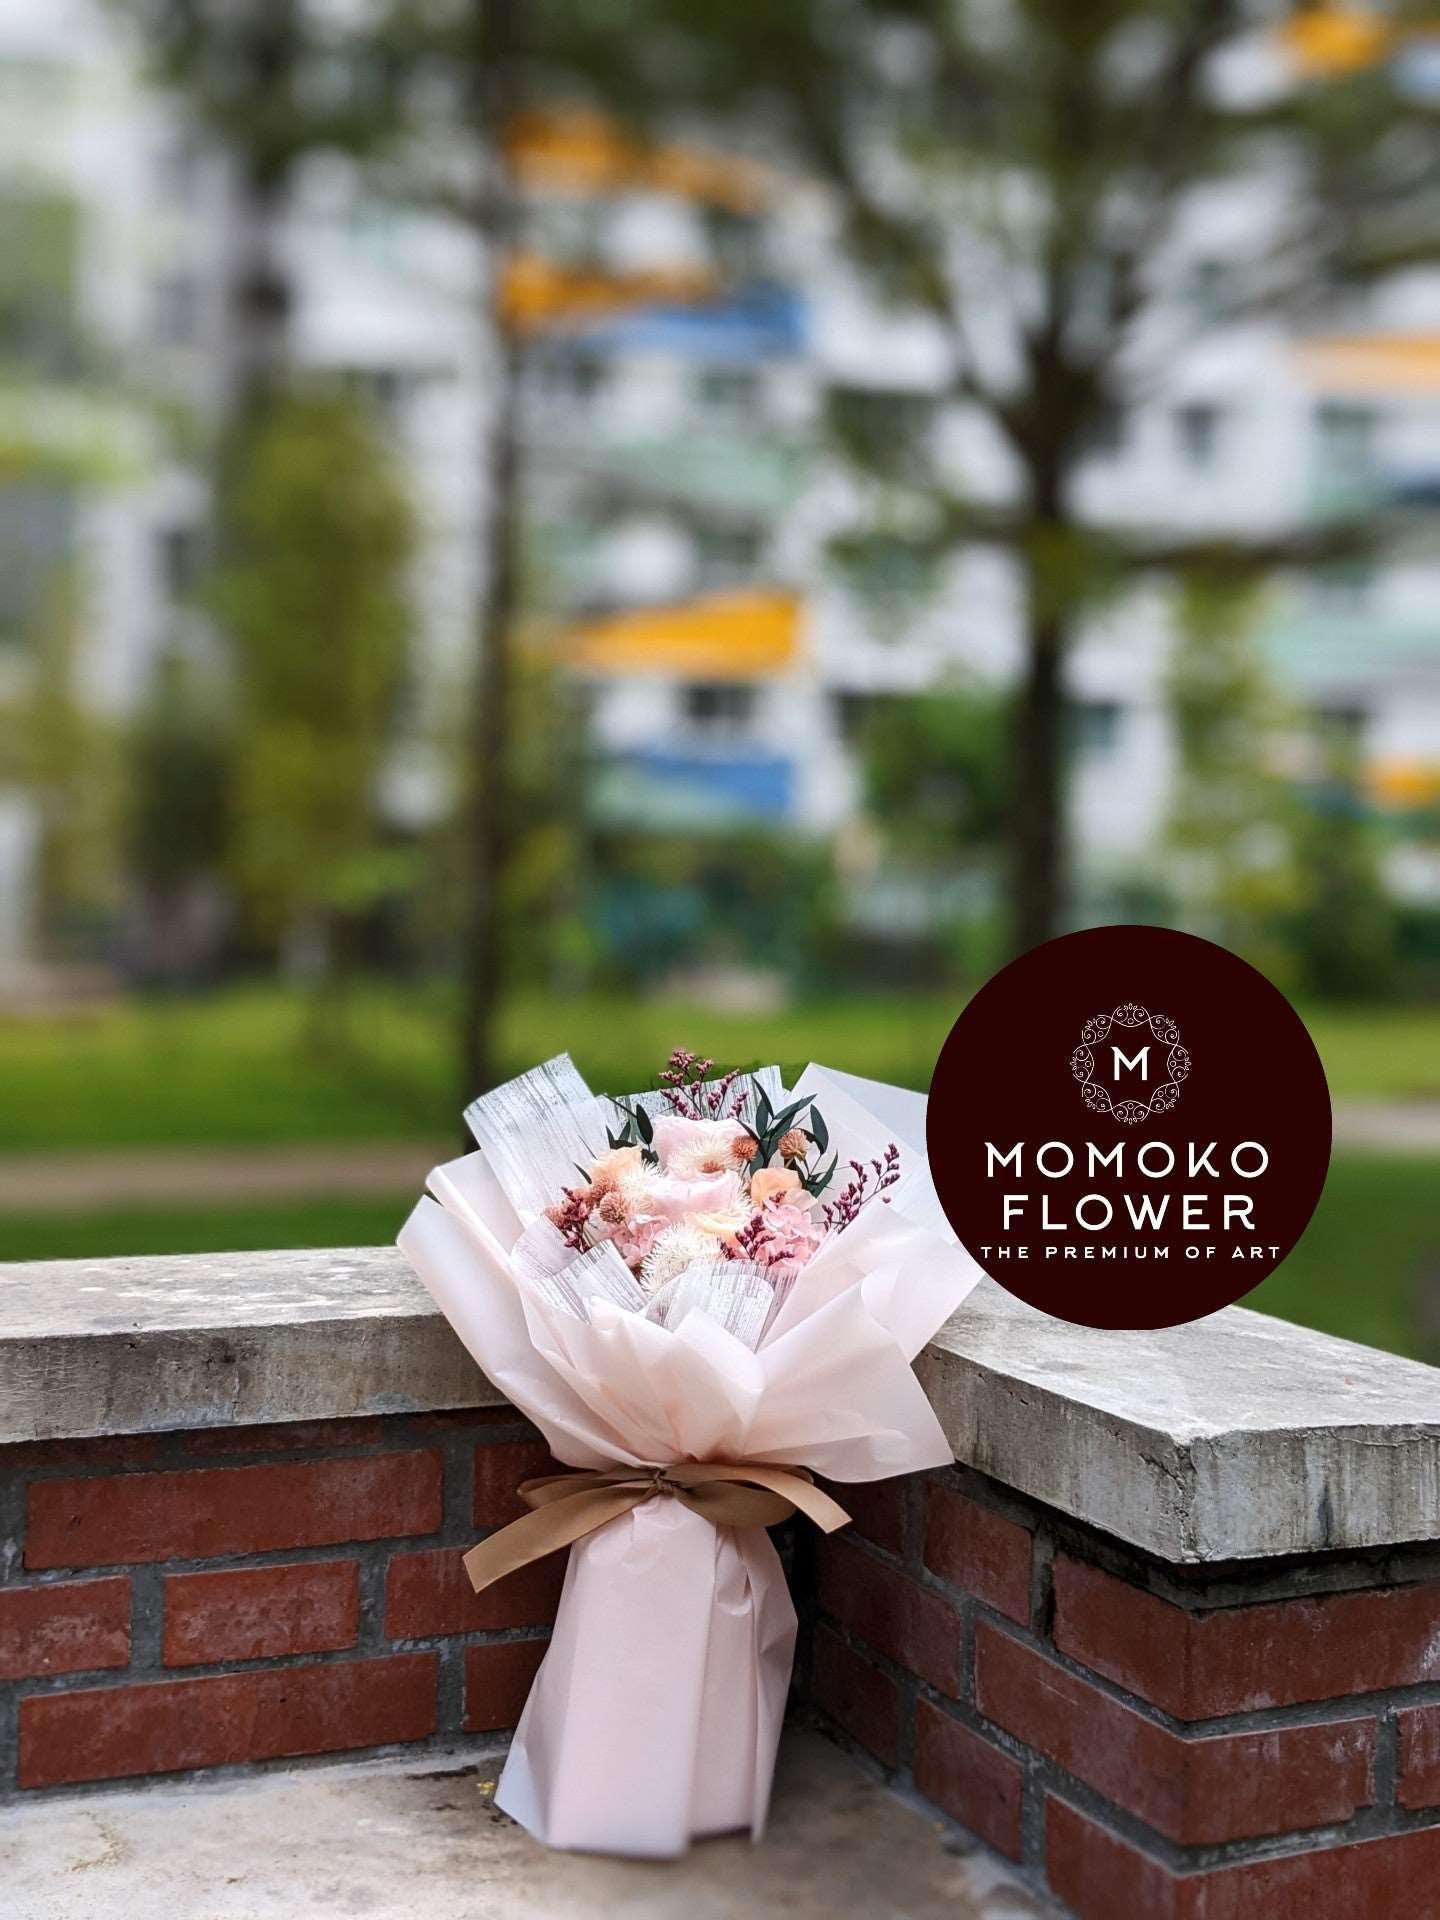 ALL – Momoko Flower